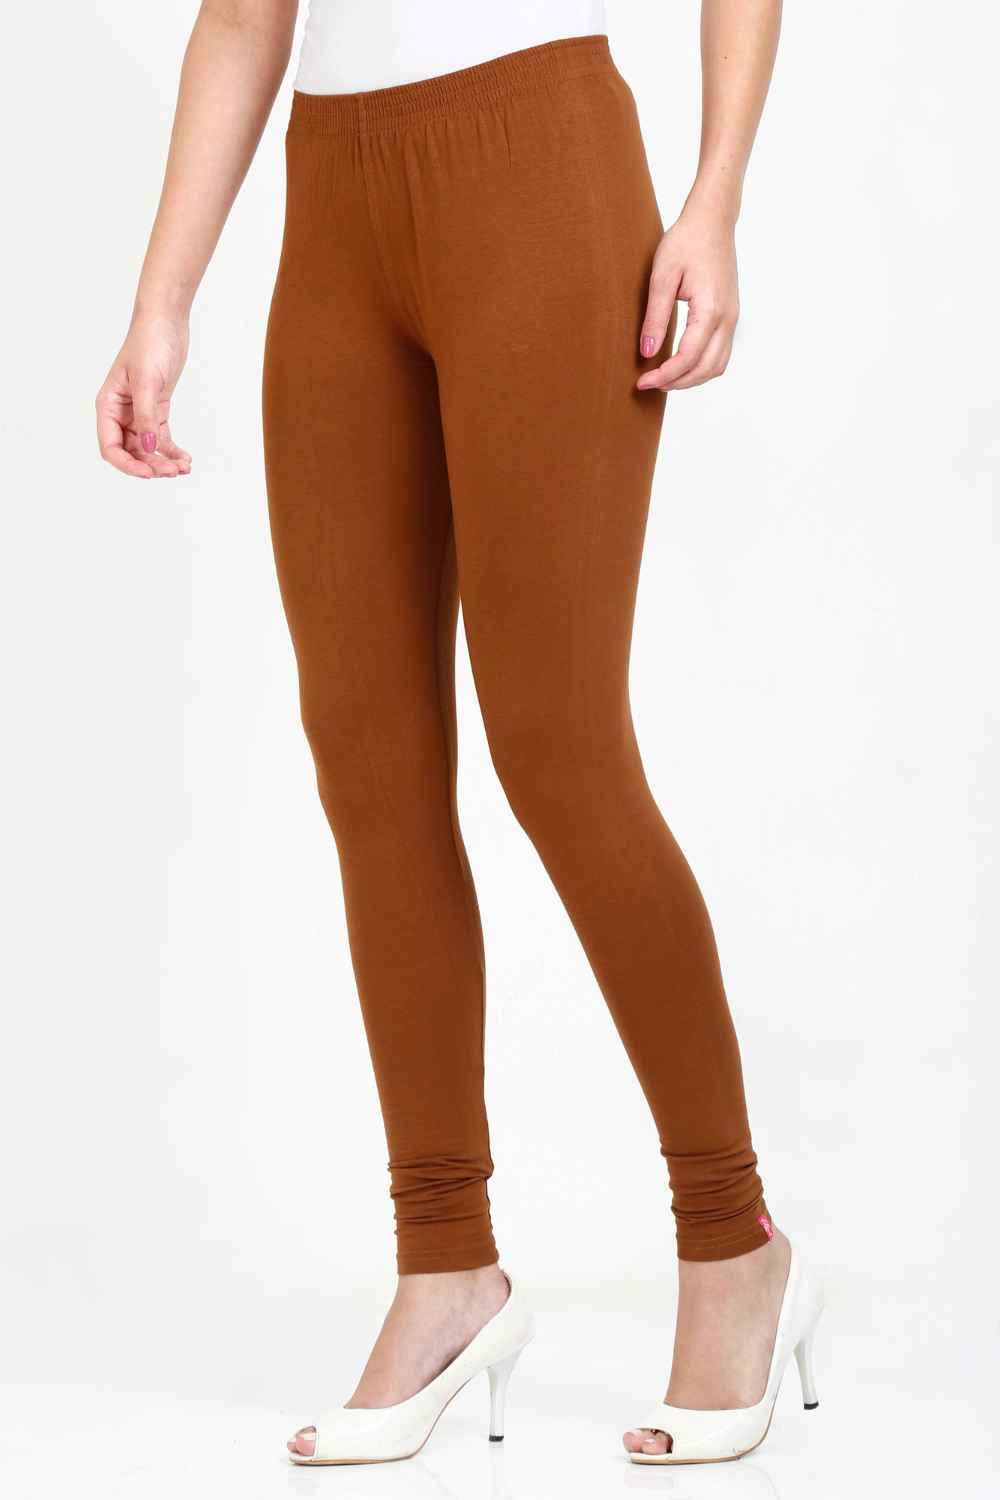 Women's Cotton Lycra Tawny Brown Full length legging – Sand Grouse